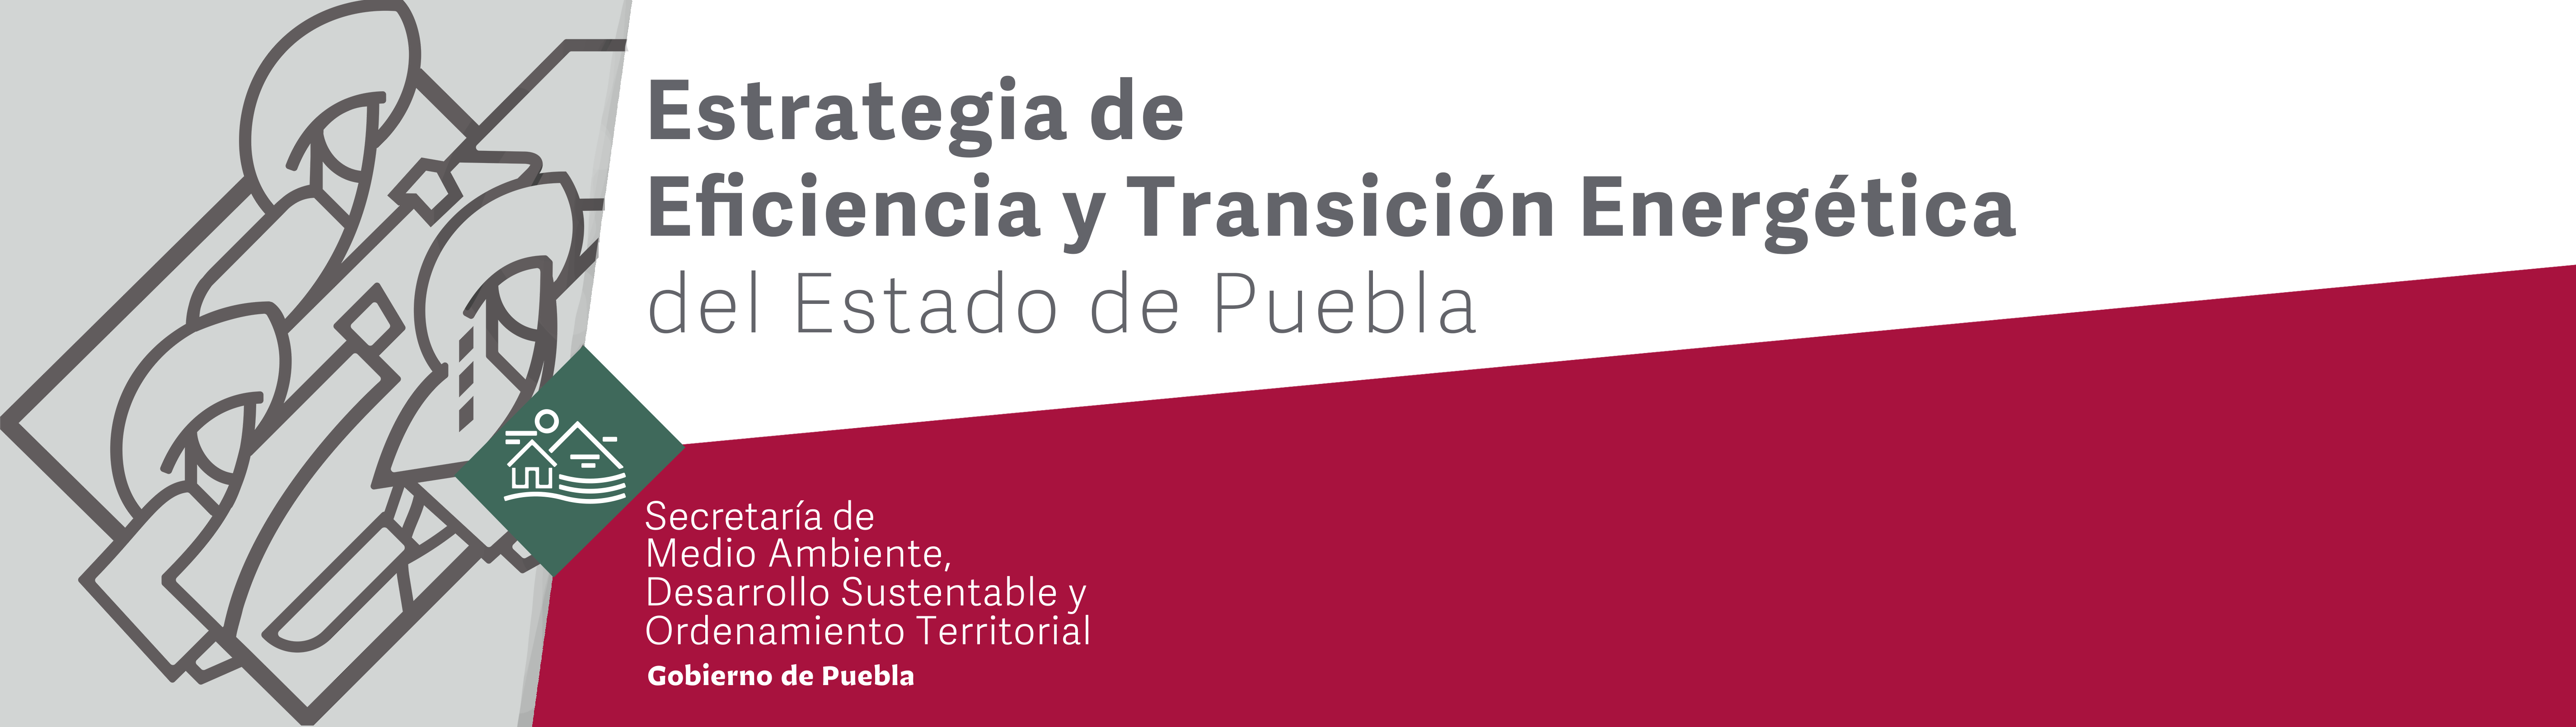 Estrategia de Eficiencia y Transición Energética del Estado de Puebla